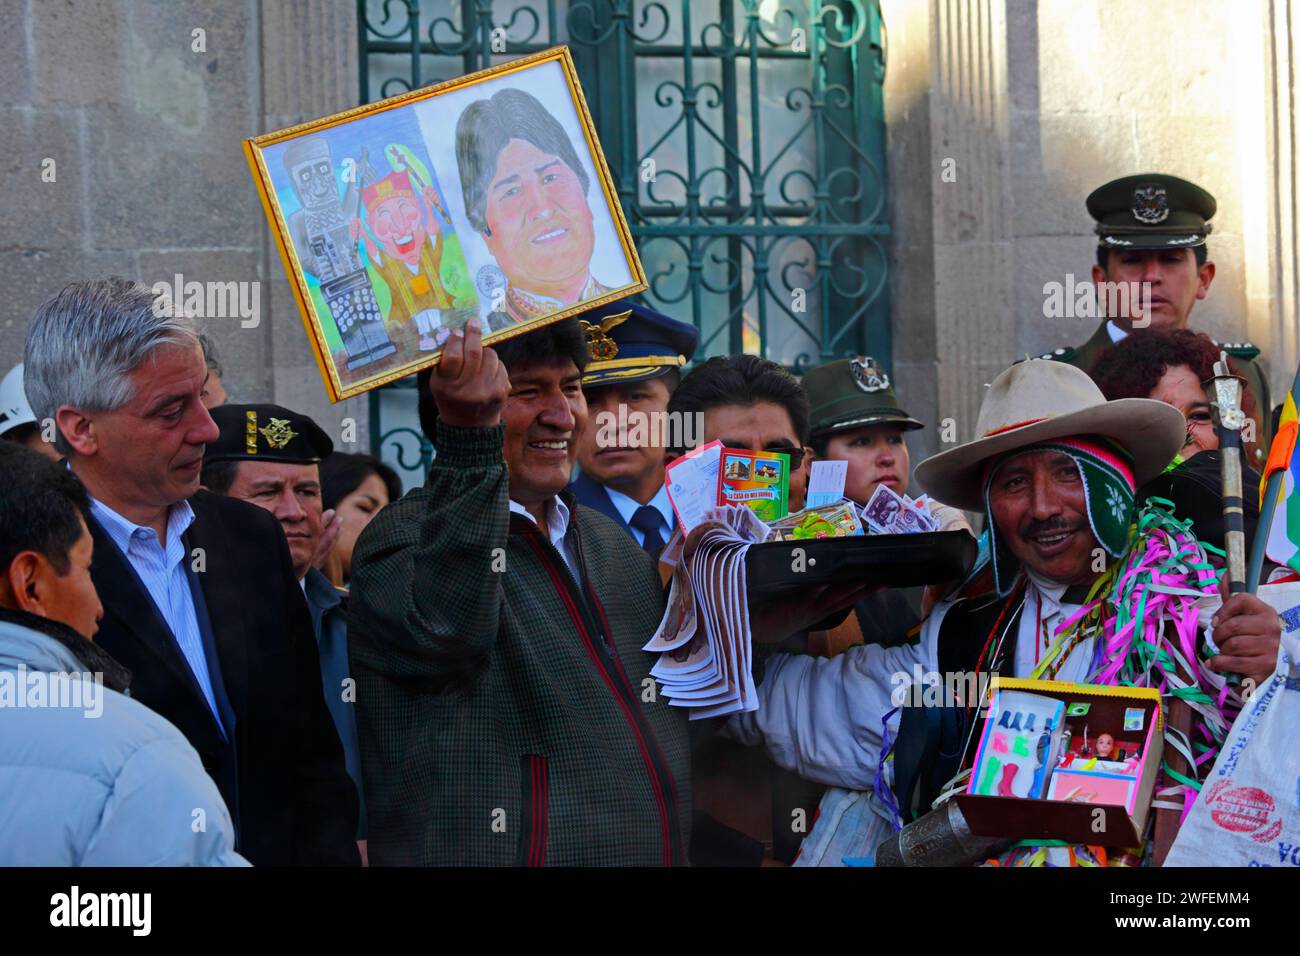 La Paz, BOLIVIE ; 24 janvier 2015. Le président bolivien Evo Morales tenant une photo de lui-même lors d’un événement marquant le début du festival Alasitas à la Paz. L'image était un cadeau de l'homme à droite qui est habillé en Ekeko, un dieu aymara d'abondance associé au festival. Au festival, les gens achètent des miniatures de ce qu'ils veulent obtenir au cours de l'année et les font bénir pour que leurs souhaits deviennent réalité. Les miniatures populaires disponibles comprennent des voitures, des maisons, de l'argent, des certificats de diplôme, des valises et des passeports (pour voyager). Banque D'Images